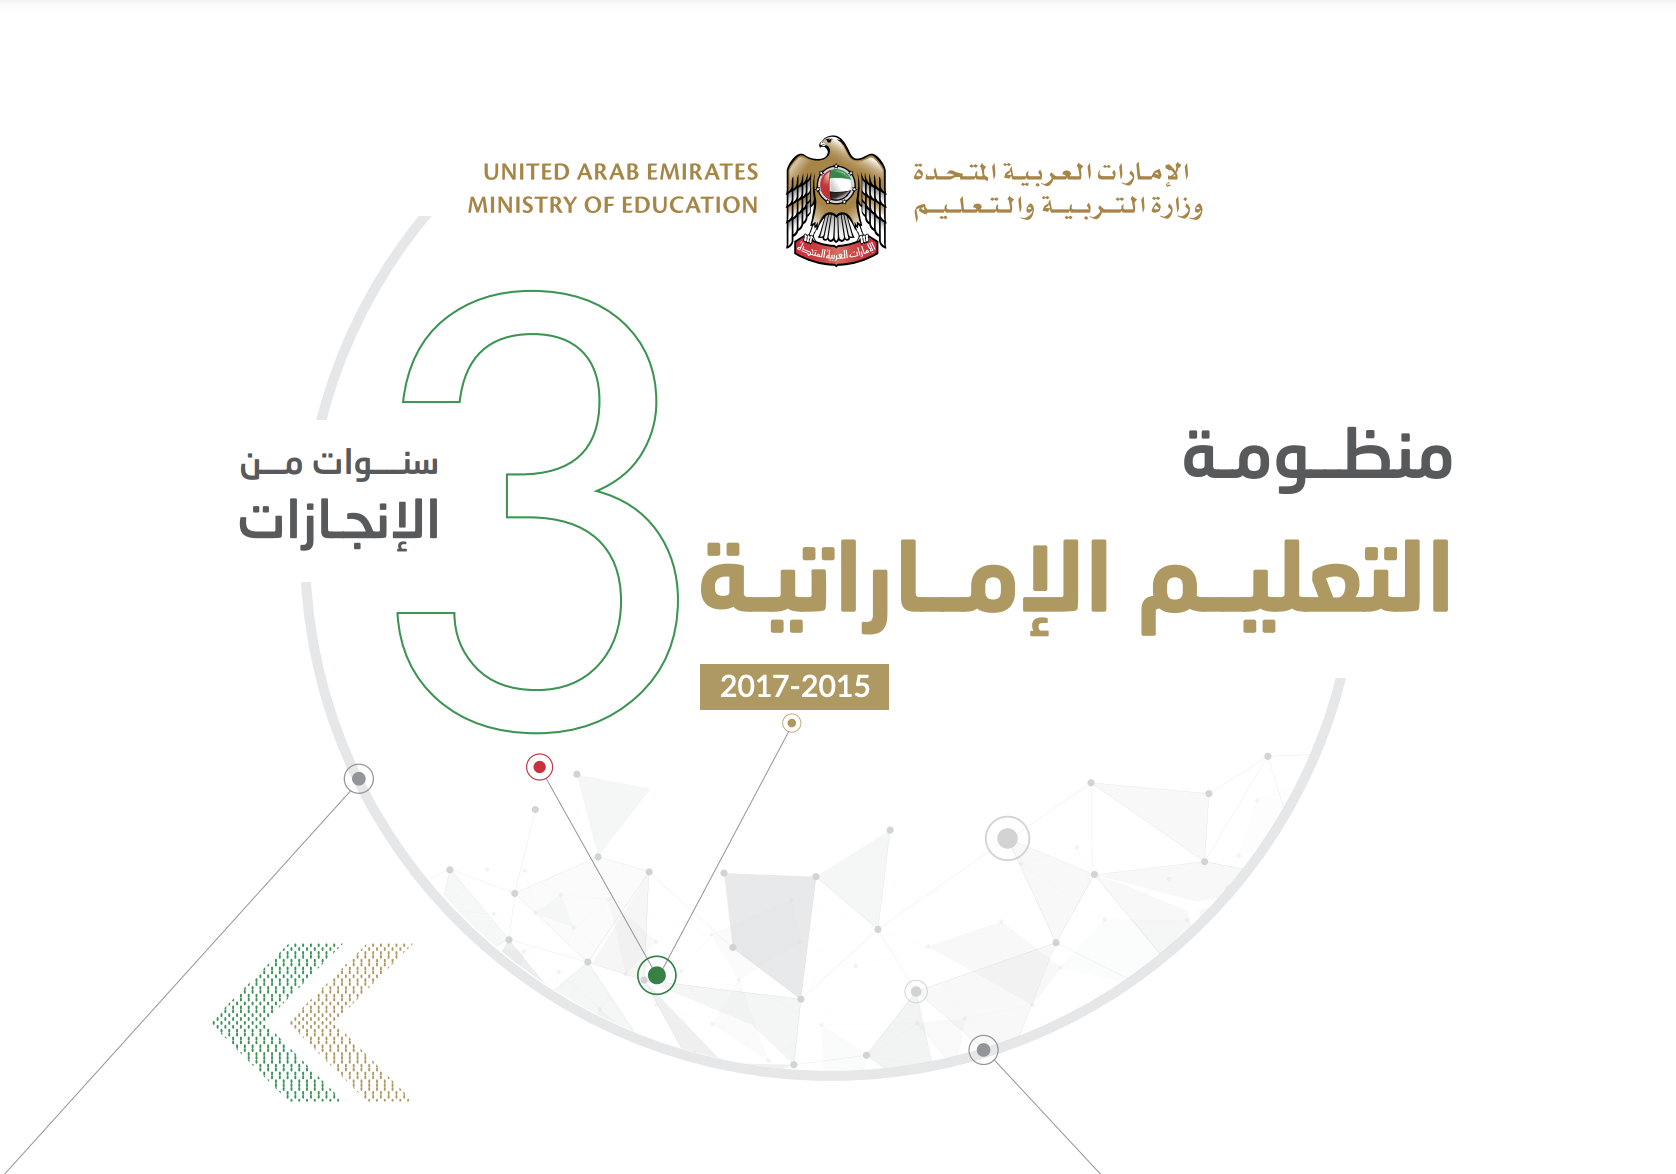 كتاب منظومة التعليم الإماراتية 2015 - 2017 : 3 سنوات من الإنجازات